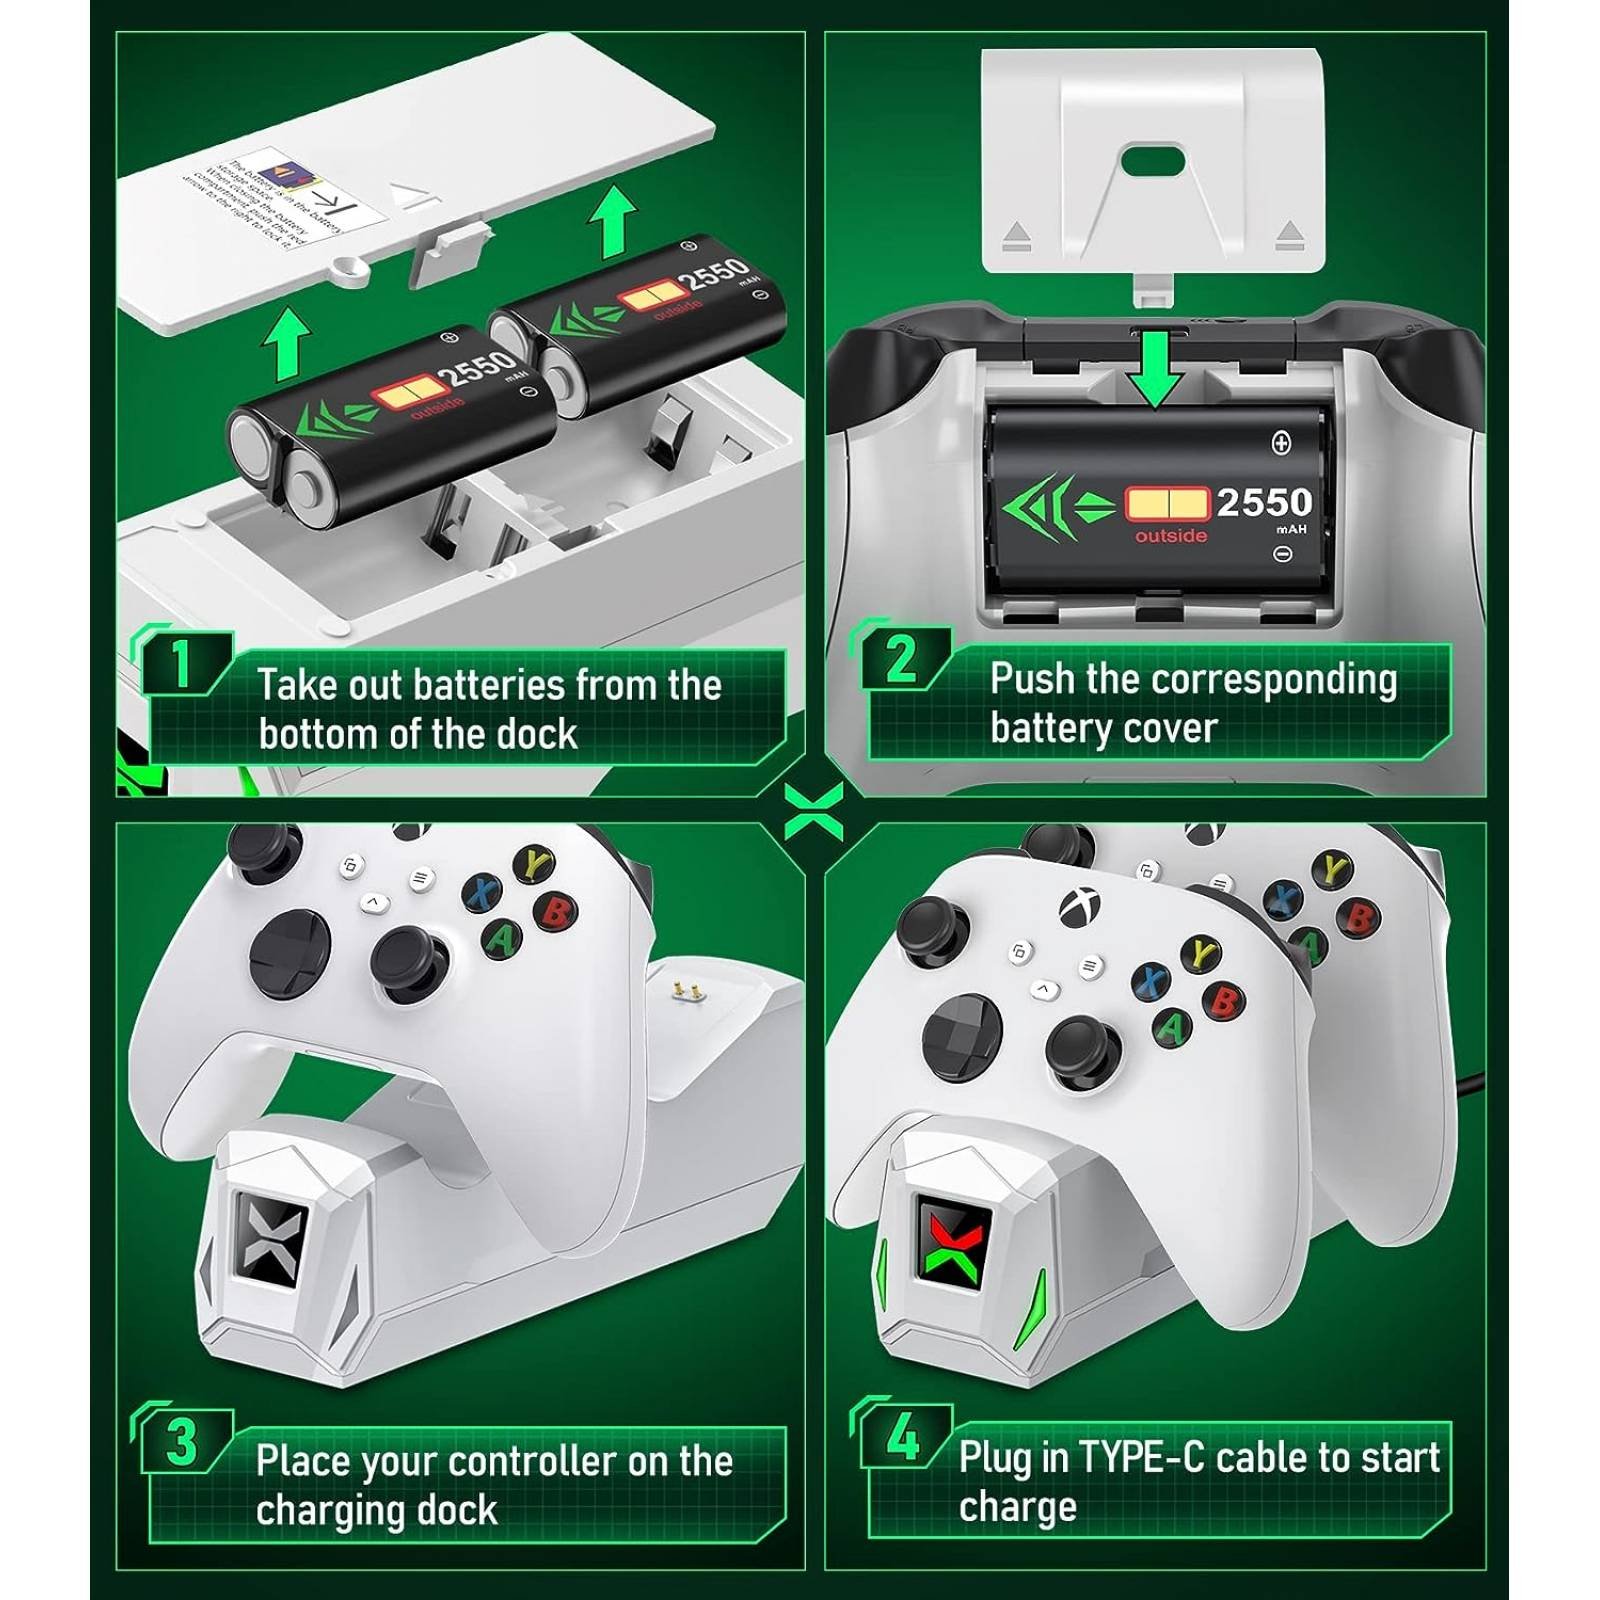 Cable USB Cargador Batería para Mando Xbox 360 - Blanco